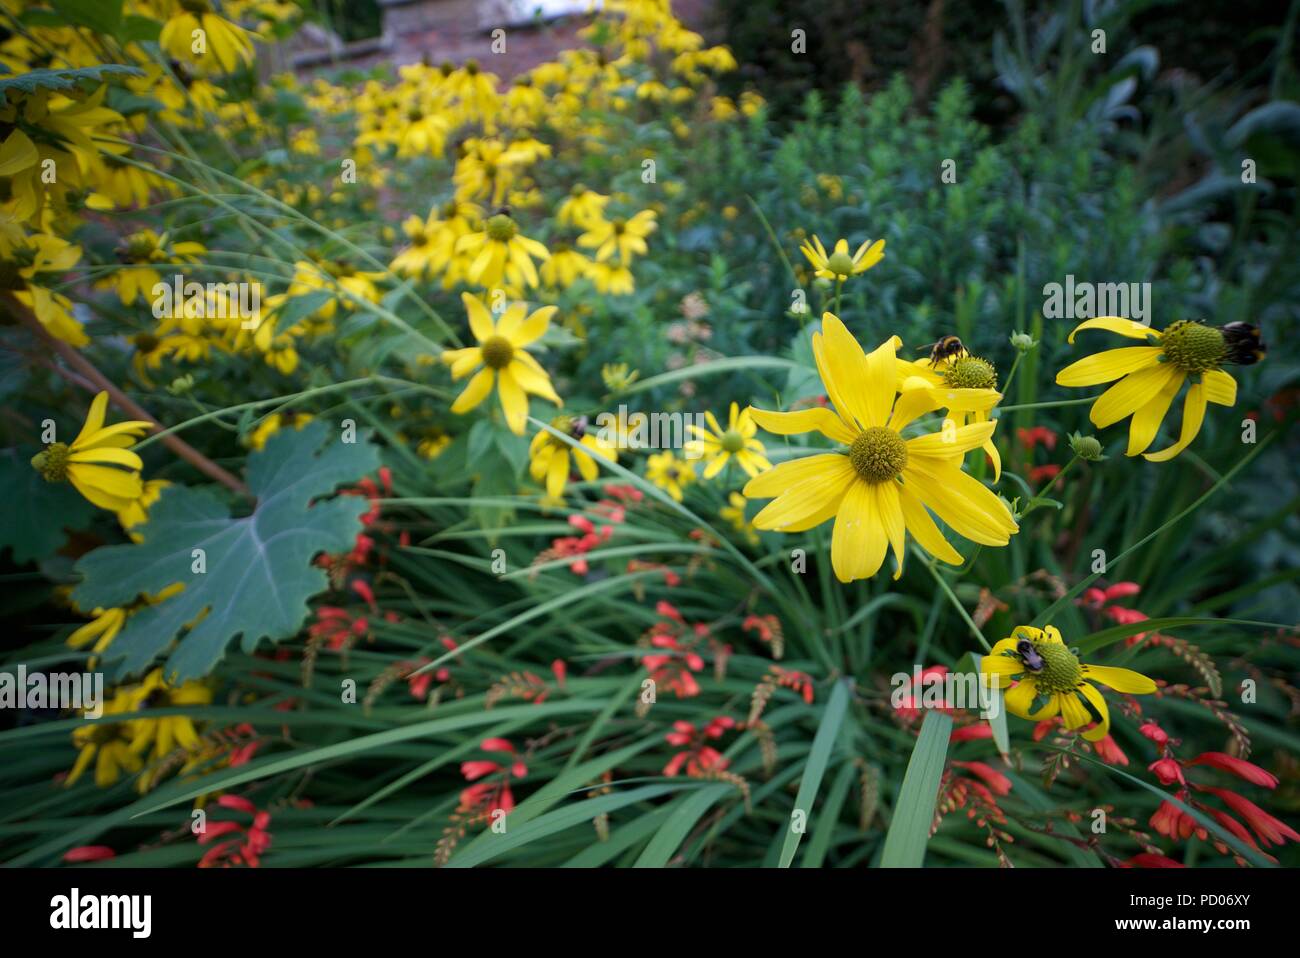 Cutleaf Coneflower Flower, gelbe Arten von Coneflowers (Rudbeckia) auch bekannt als Wild Golden Glow, Thimbleweed, Sochan und Green-headed Coneflower. Stockfoto